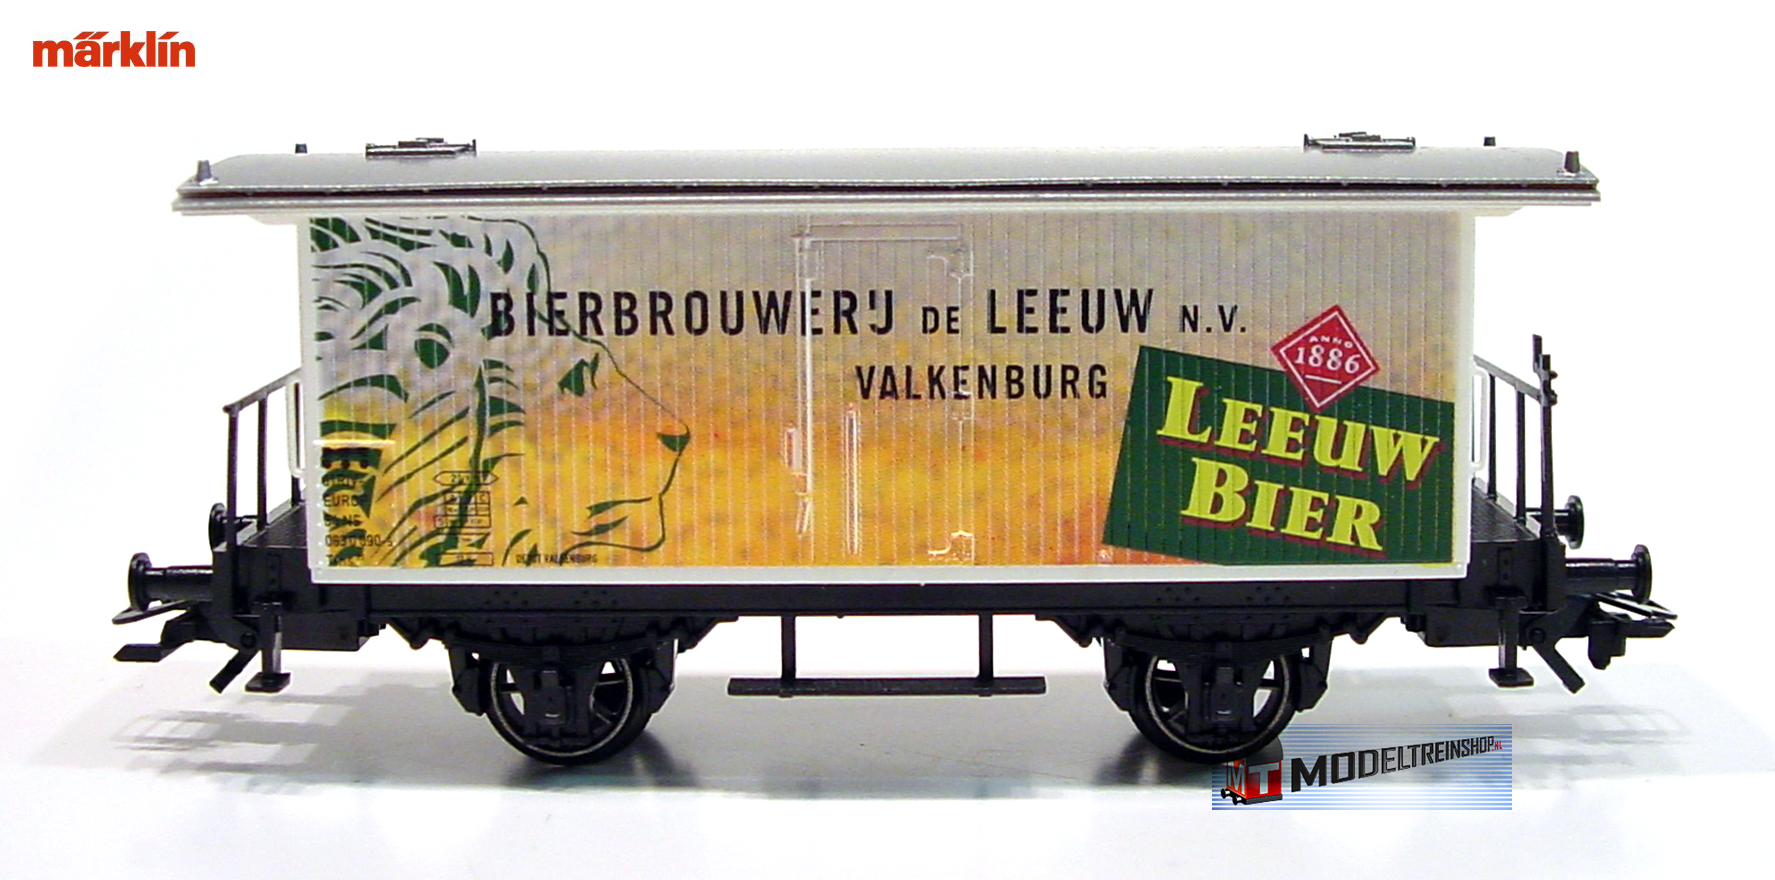 Marklin HO 48281.009 Bierbrouwerij de Leeuw Valkenburg - Leeuw bier - Modeltreinshop